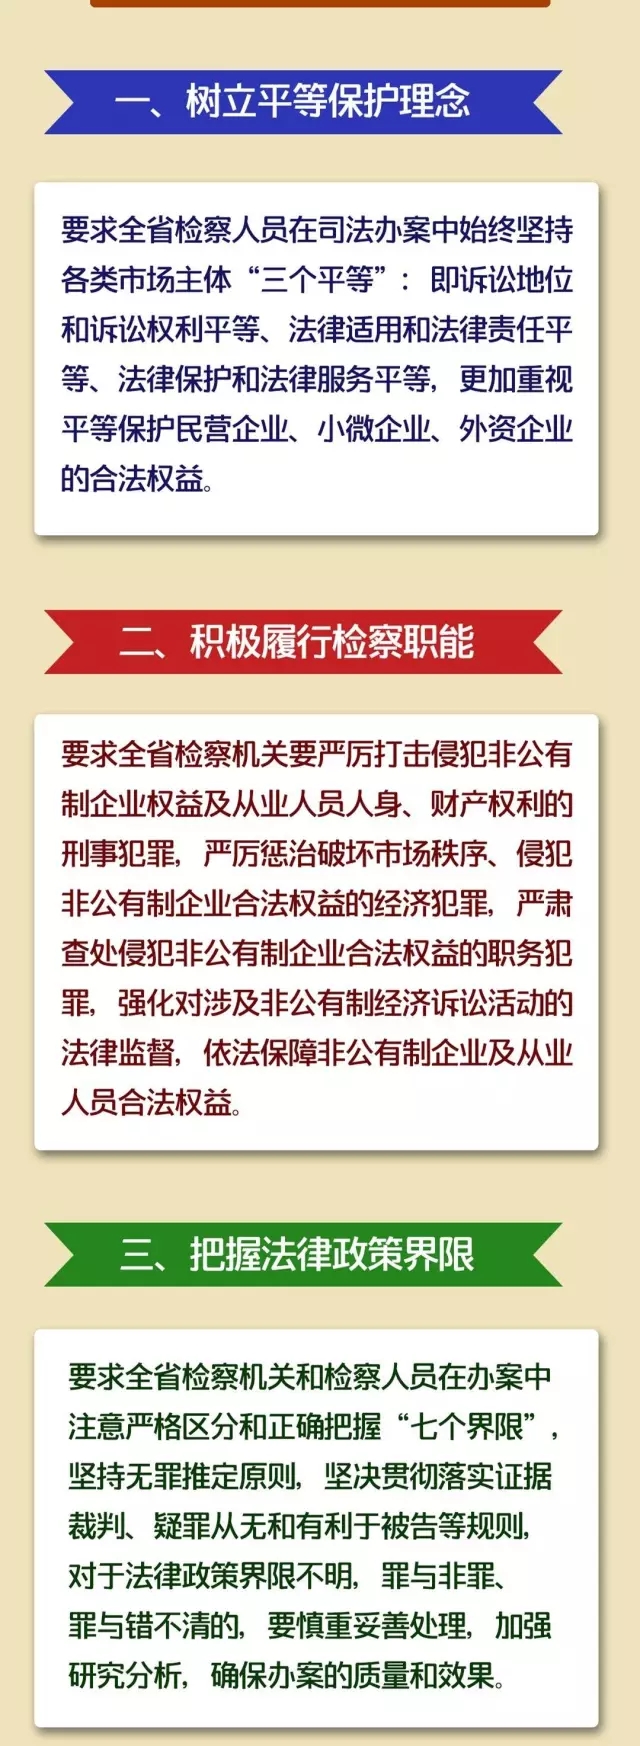 图解 ：贵州省检察院服务非公经济发展二十条措施有哪些干货？